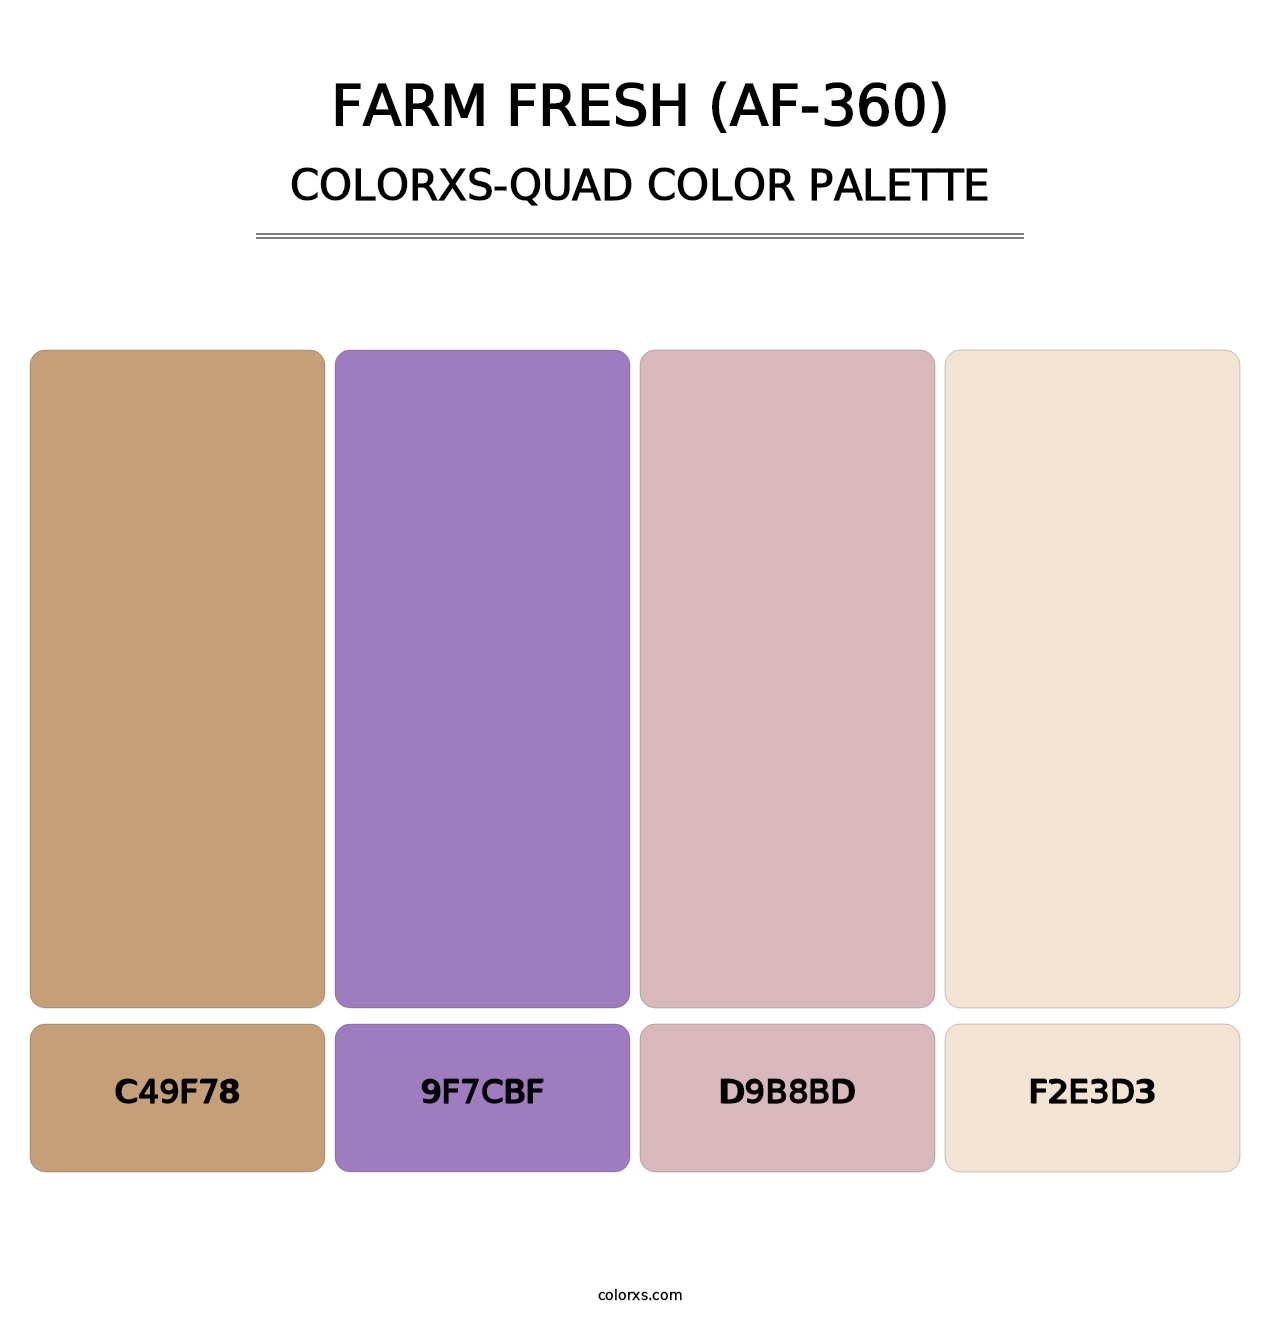 Farm Fresh (AF-360) - Colorxs Quad Palette